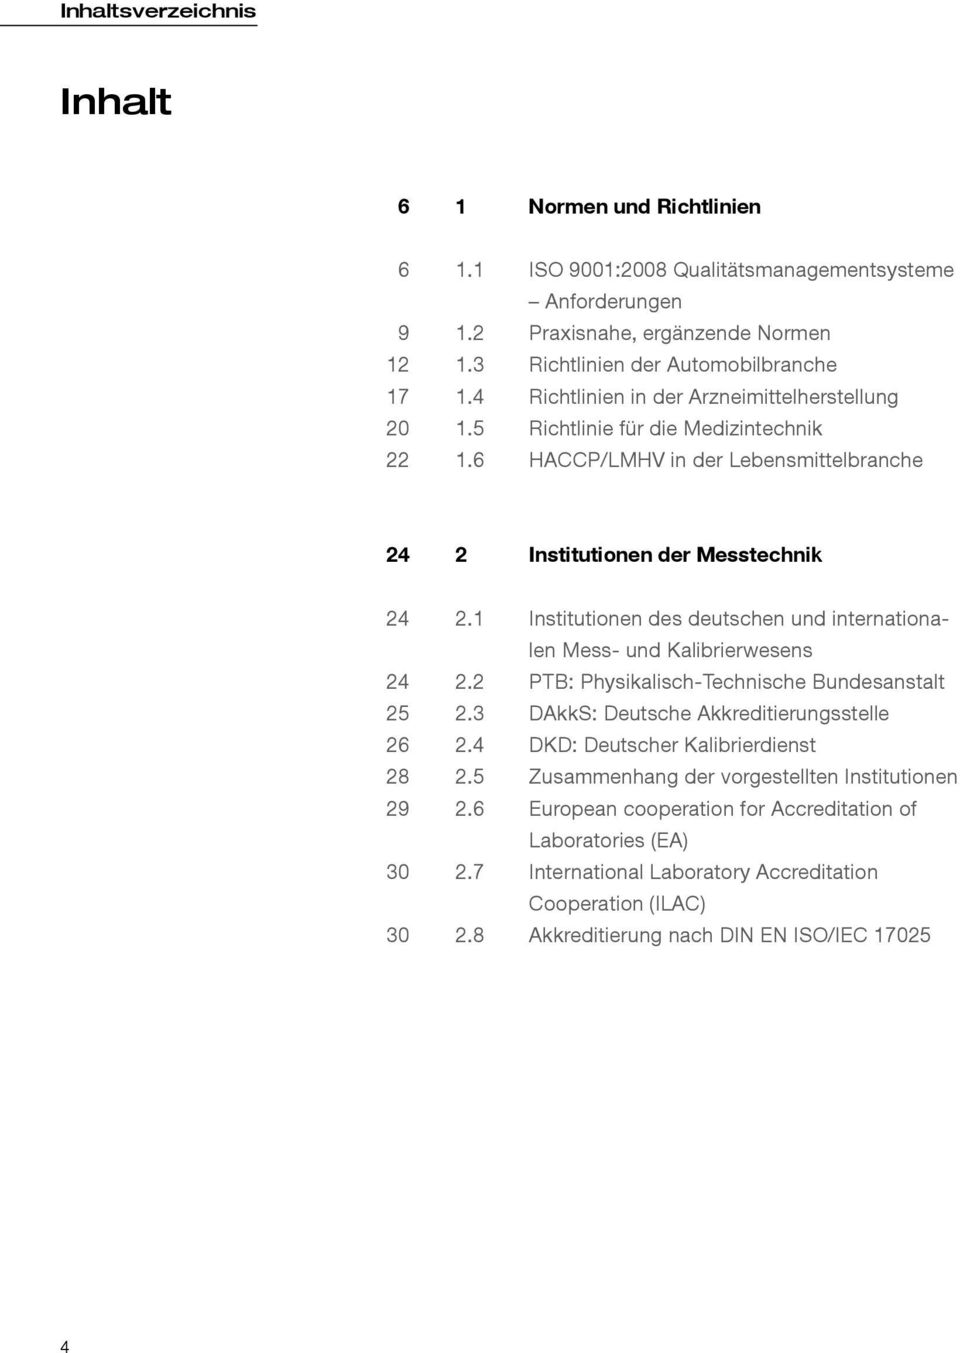 1 Institutionen des deutschen und internationalen Mess- und Kalibrierwesens 24 2.2 PTB: Physikalisch-Technische Bundesanstalt 25 2.3 DAkkS: Deutsche Akkreditierungsstelle 26 2.